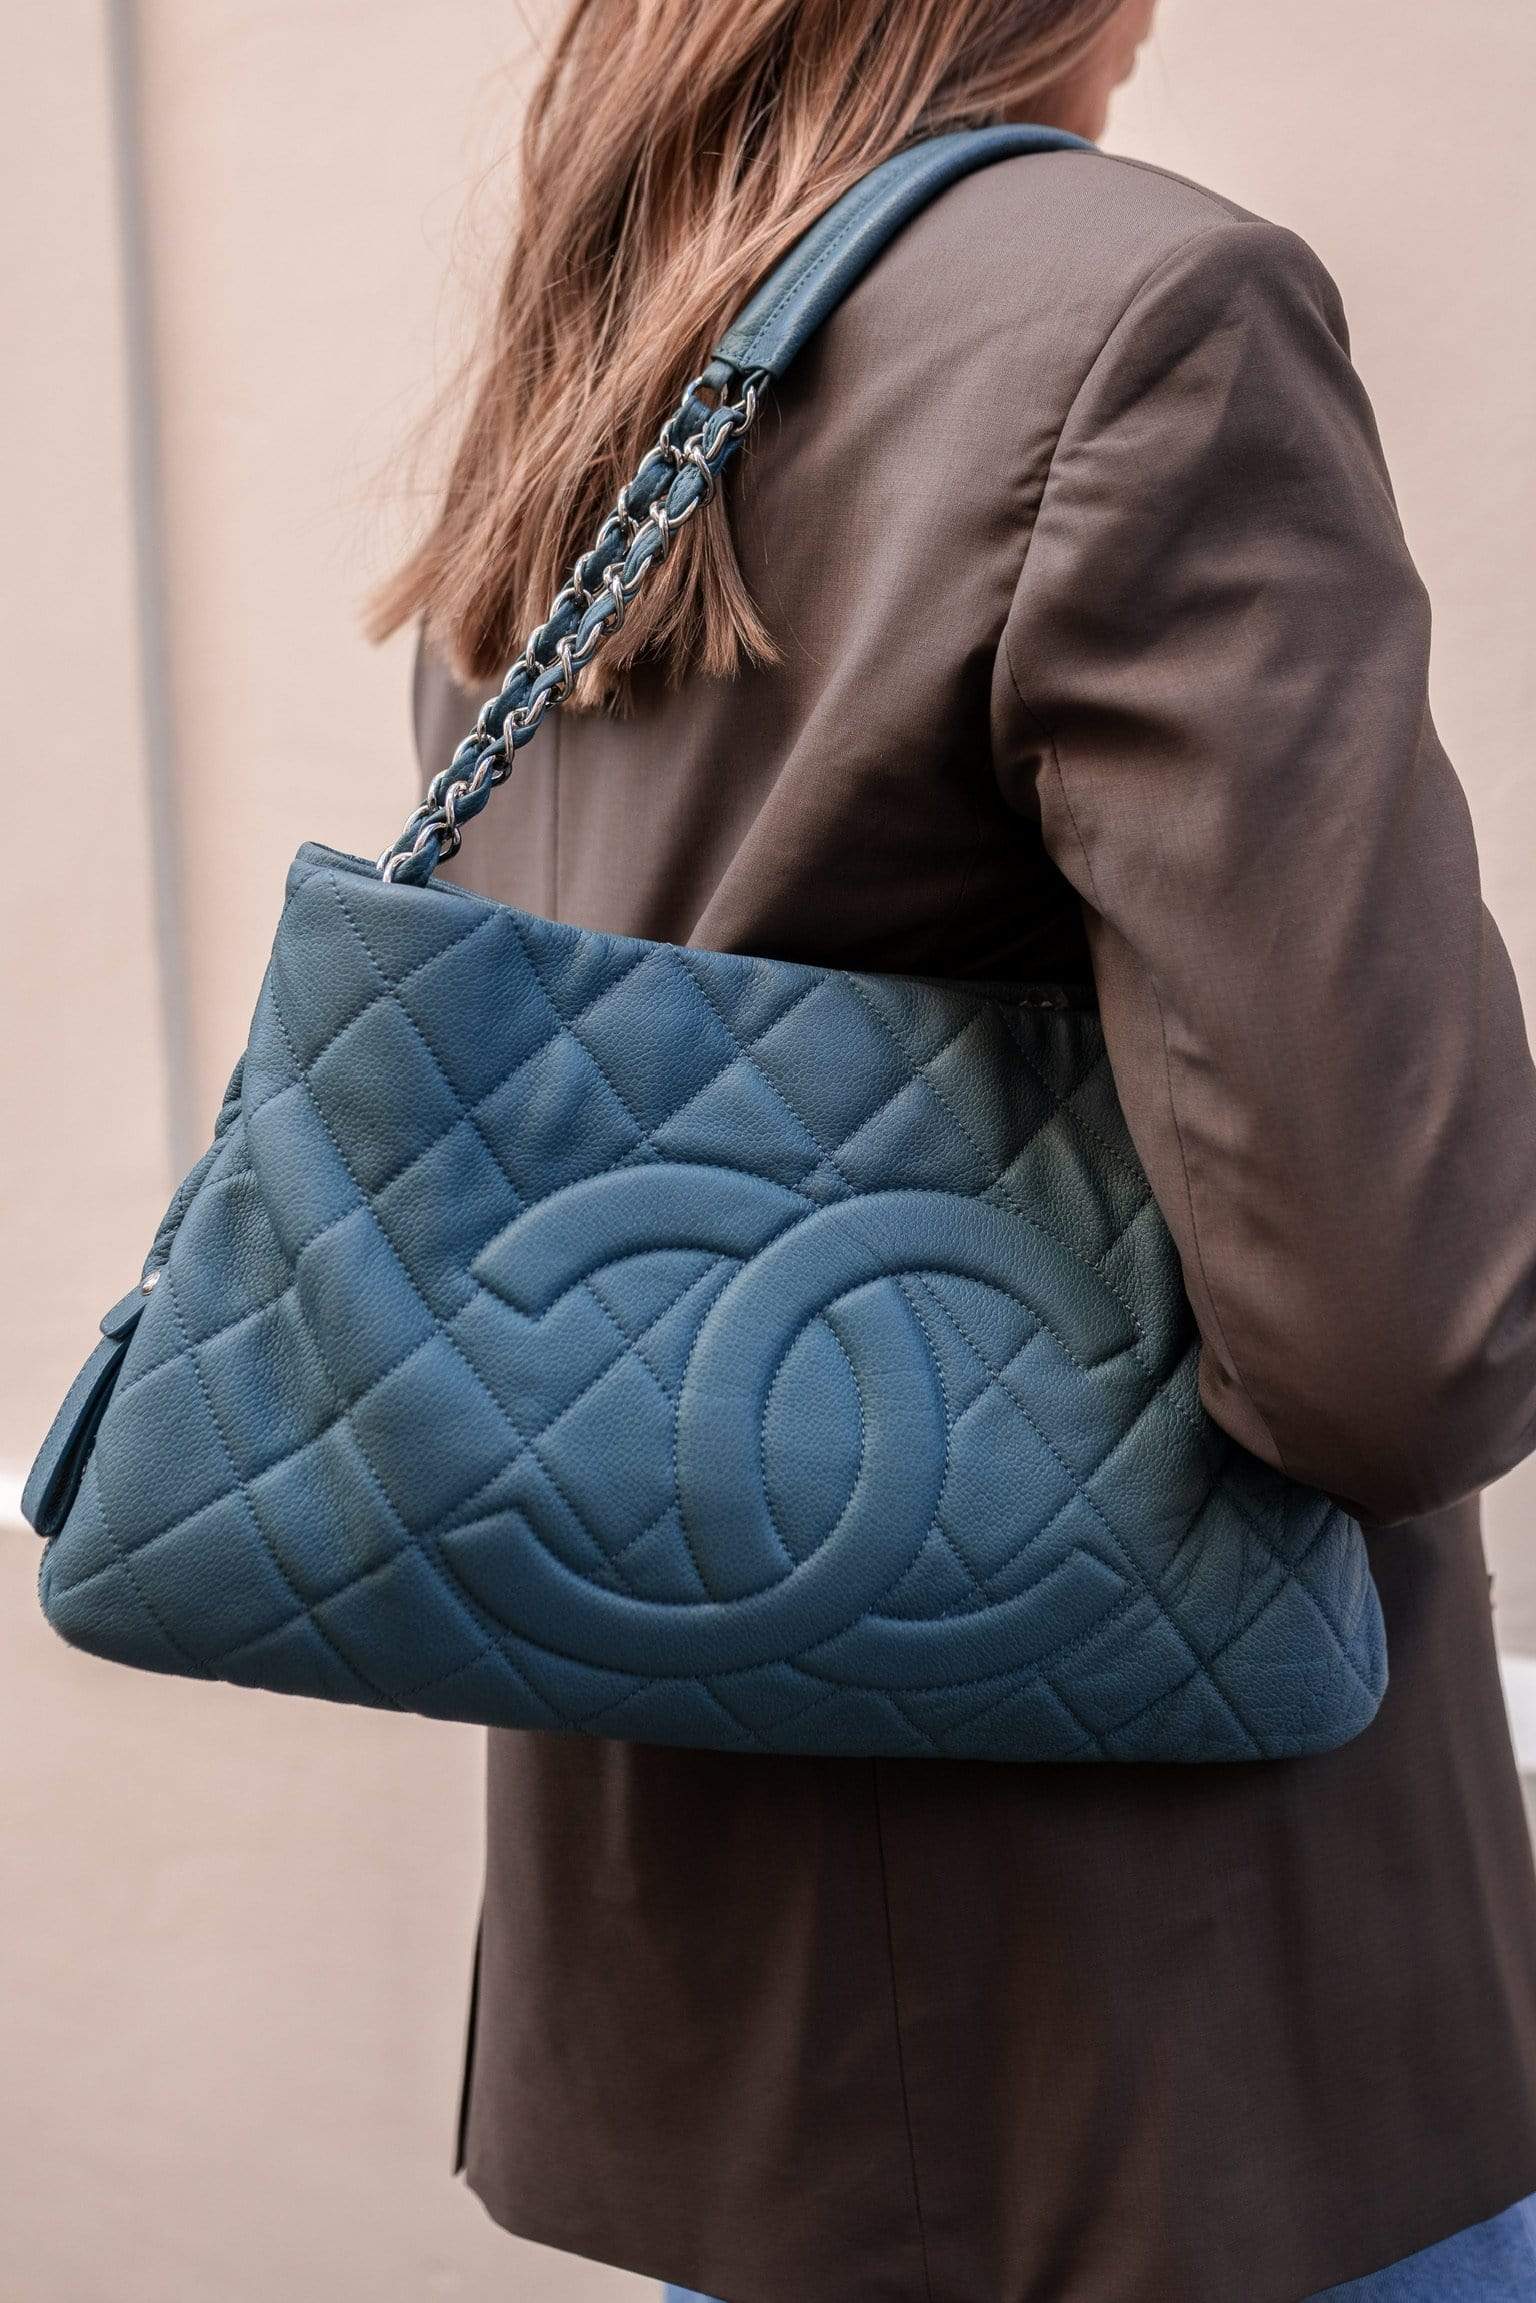 Chanel Chanel Teal shopper Tote Bag - ASL1377